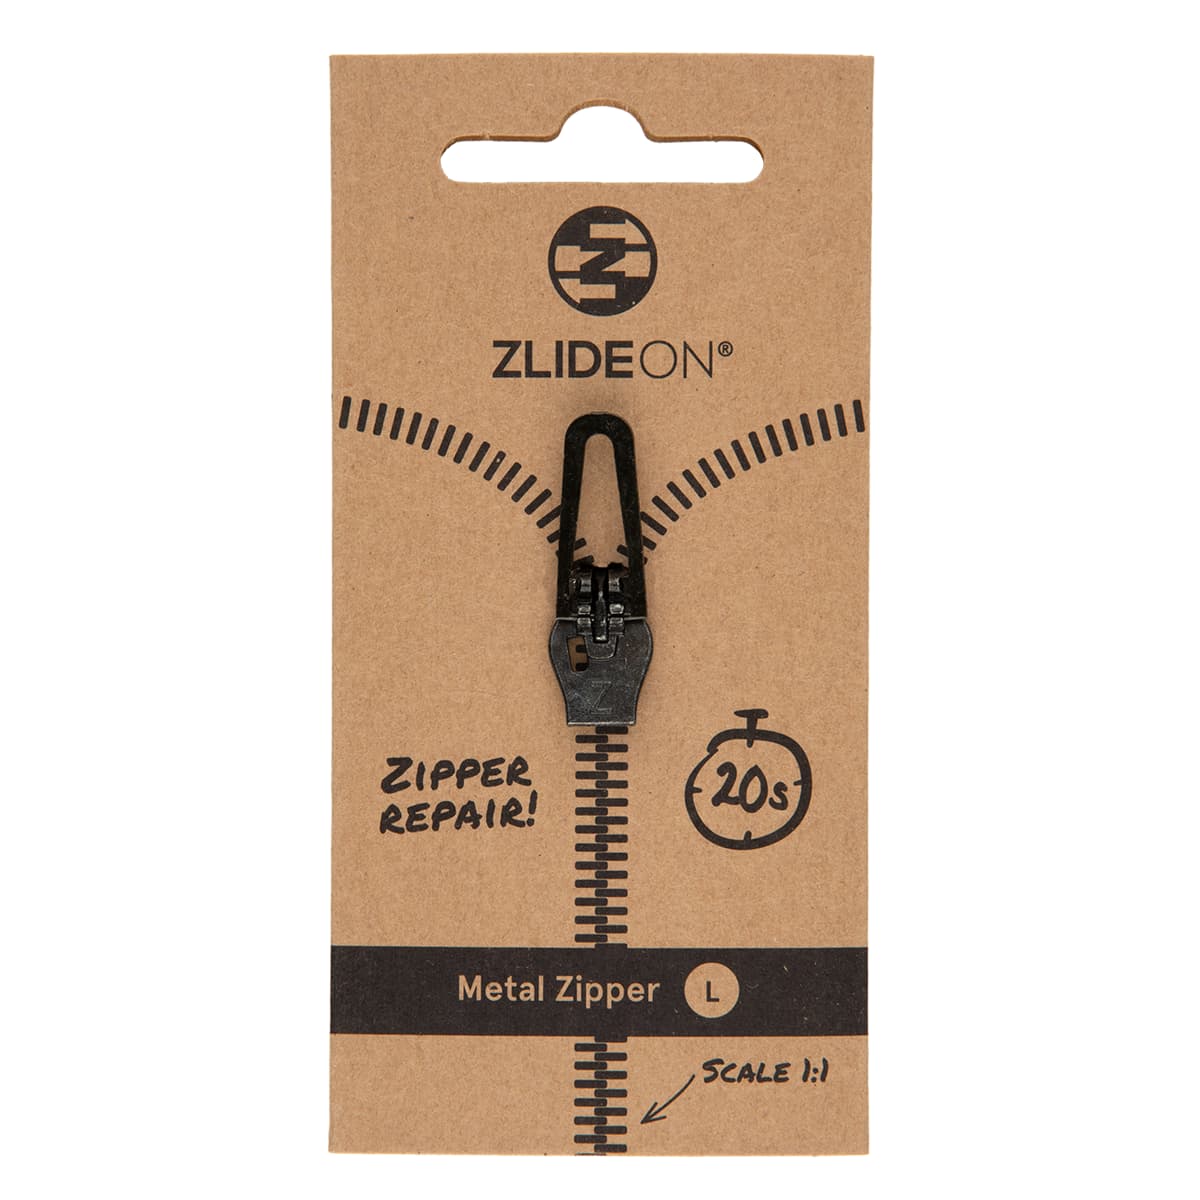 ZlideOn Metal Zipper Replacement Zipper Metal Zipper L (5A) Black